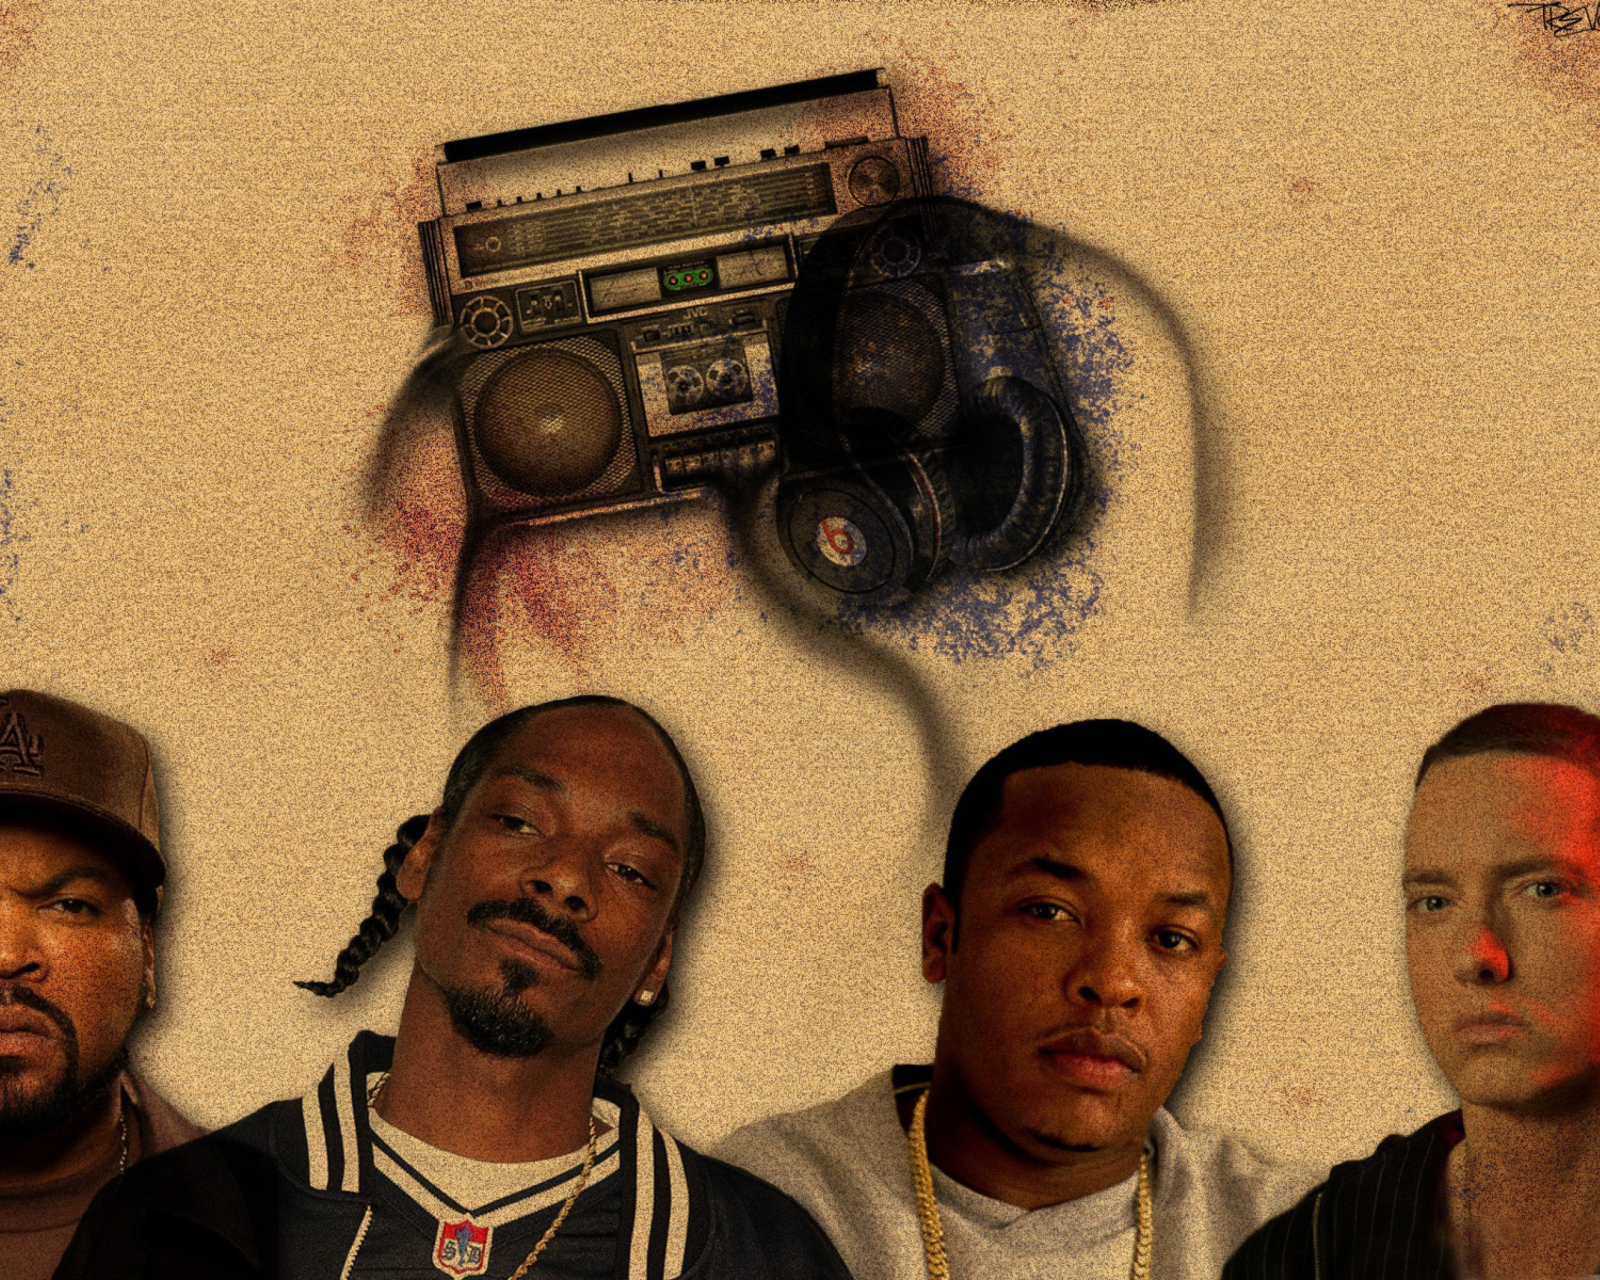 Das Ice Cube, Snoop Dogg Wallpaper 1600x1280